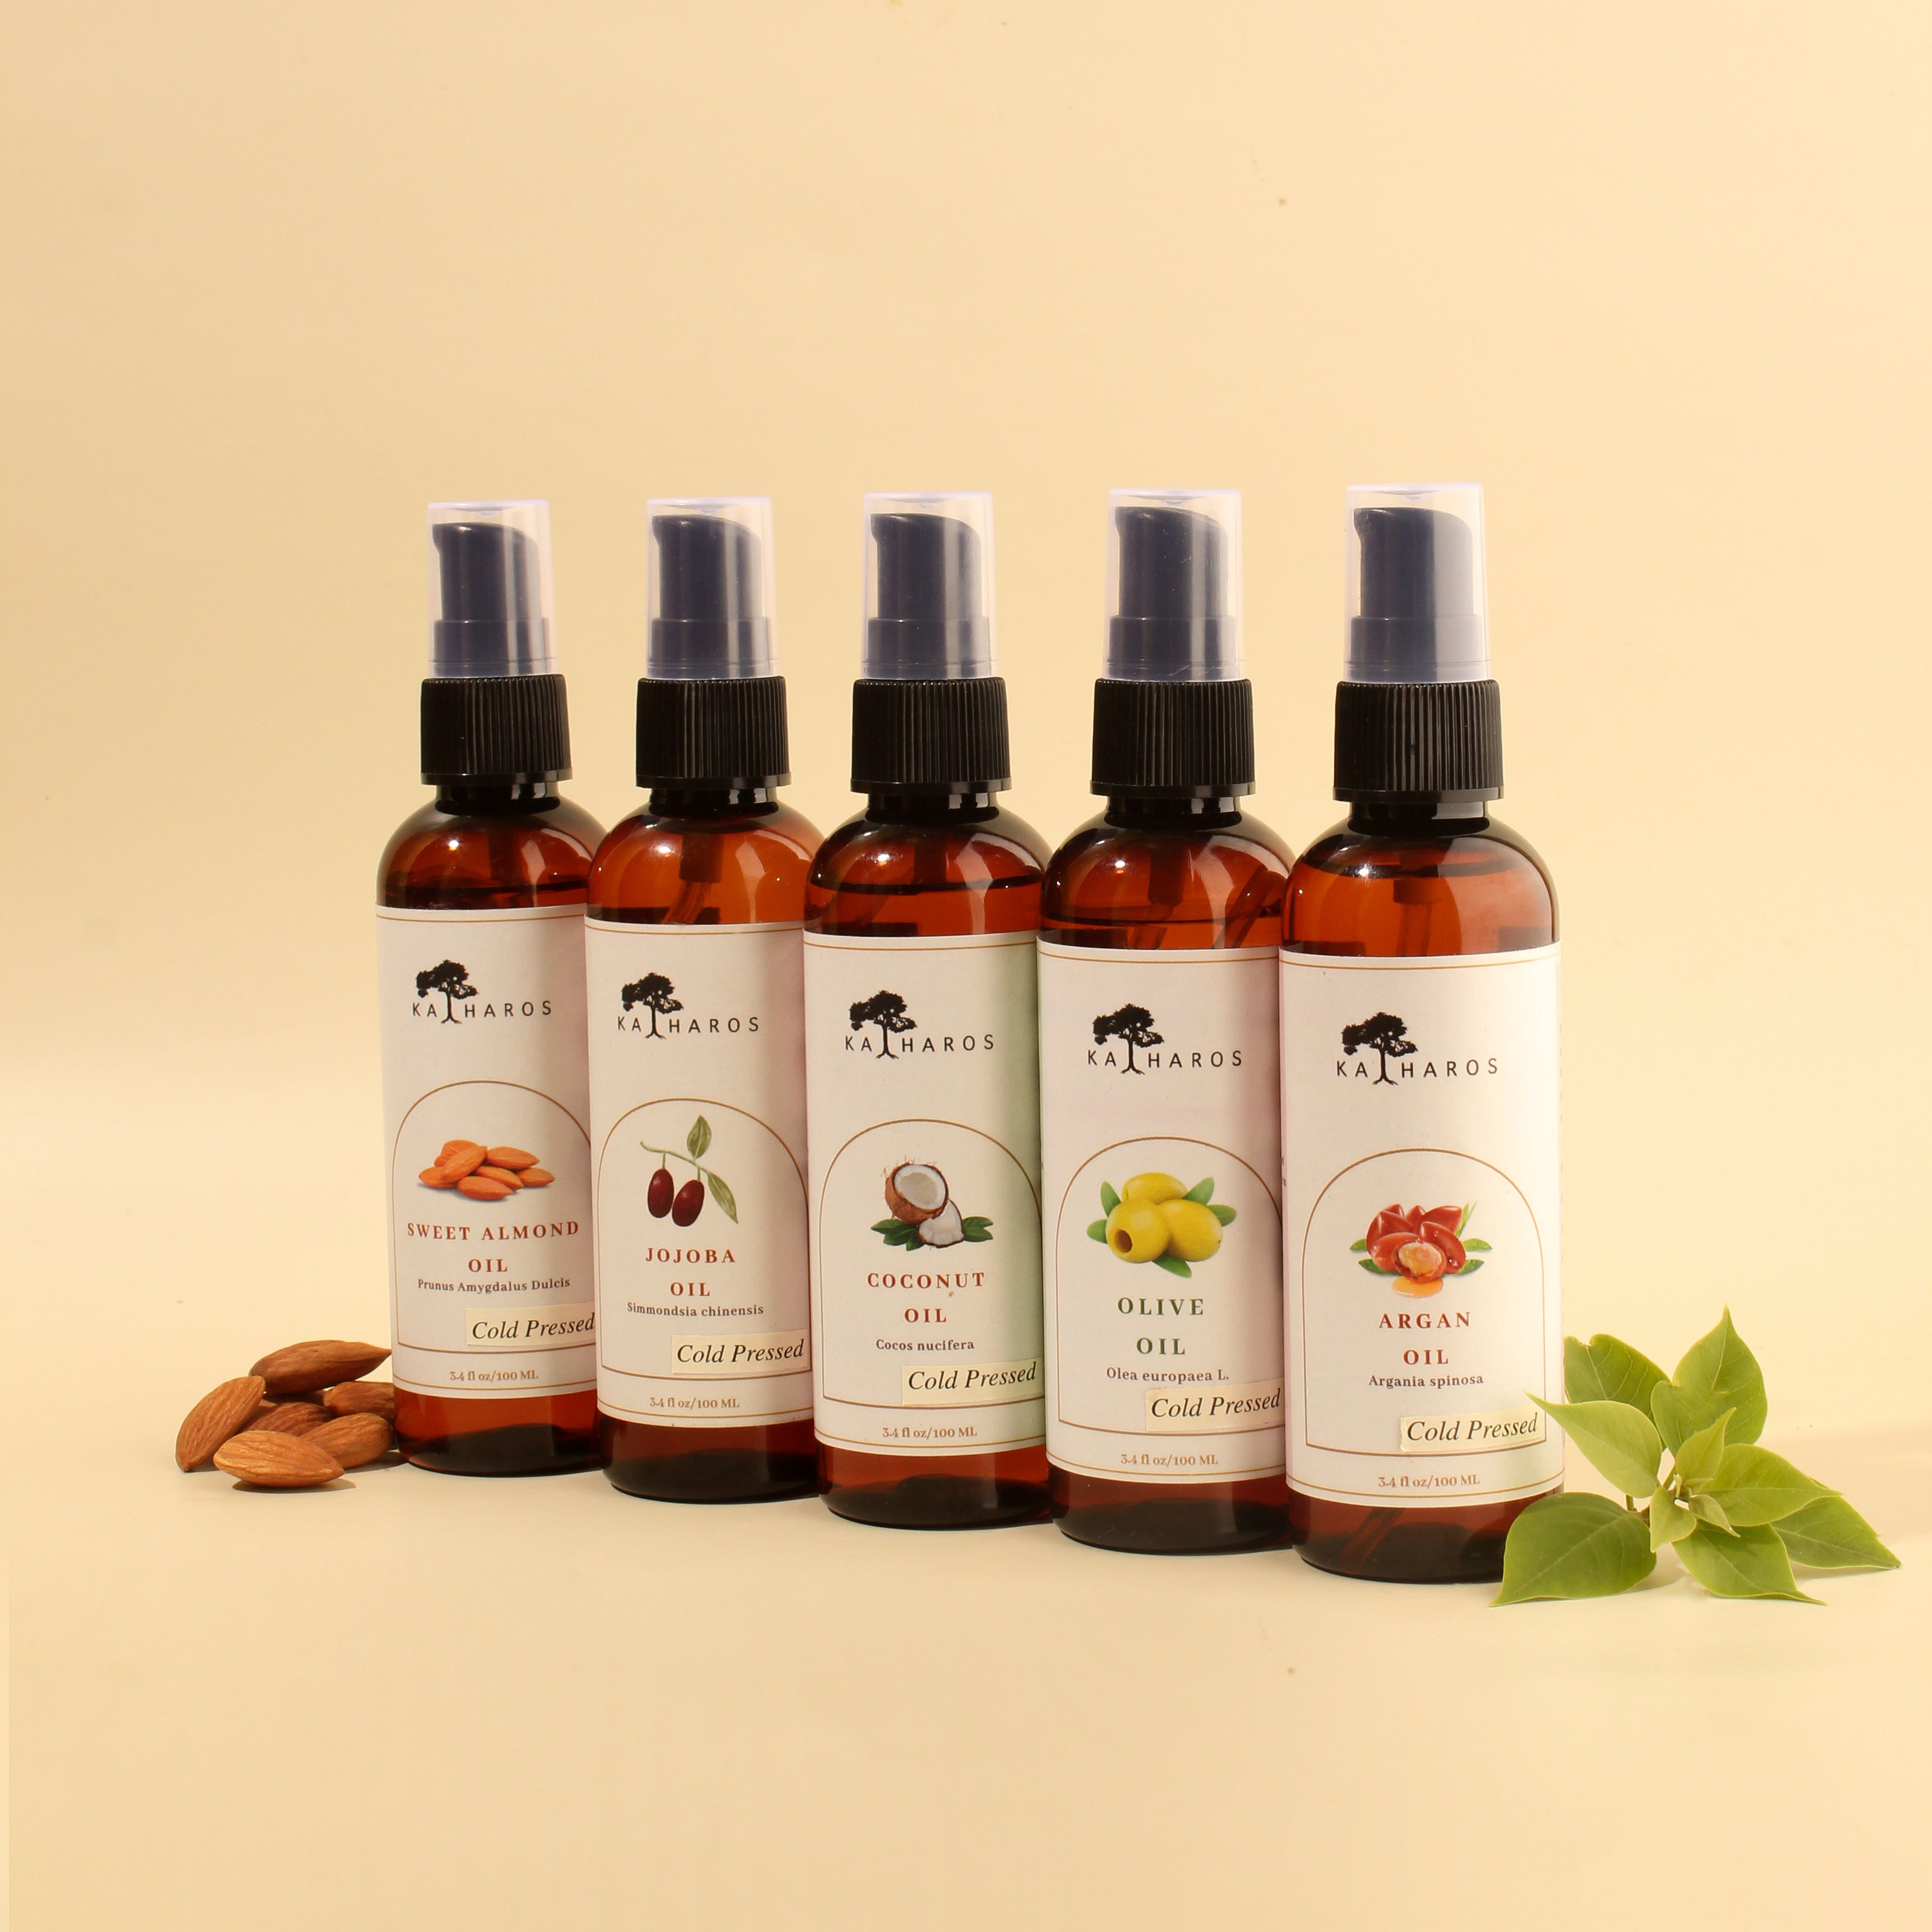 Katharos Carrier Oil Kit of 5 (Sweet Almond Oi | Jojoba Oil | Coconut Oil | Olive Oil | Argan Oil)